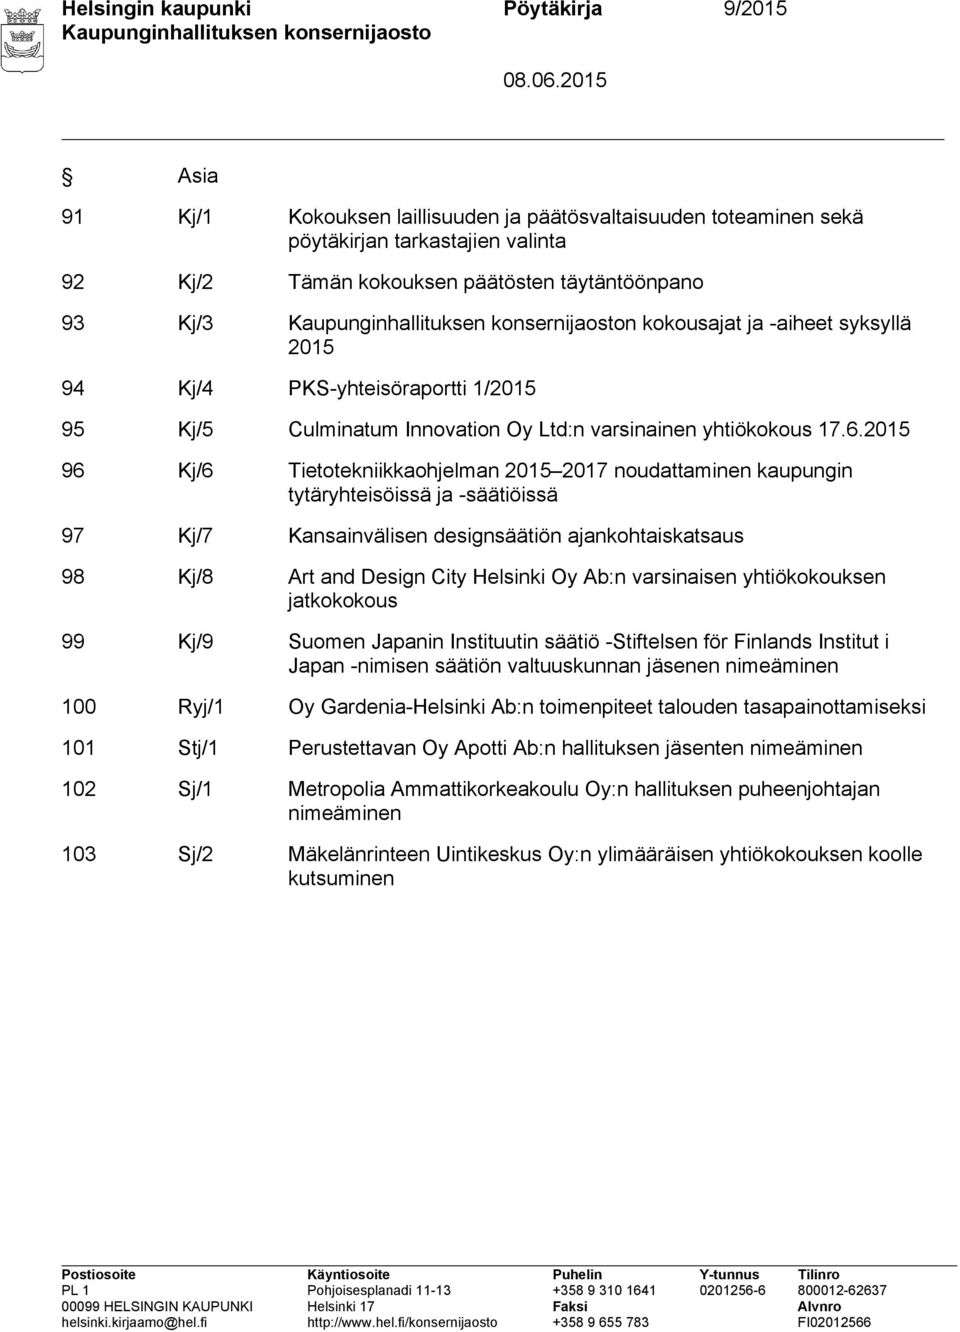 2015 96 Kj/6 Tietotekniikkaohjelman 2015 2017 noudattaminen kaupungin tytäryhteisöissä ja -säätiöissä 97 Kj/7 Kansainvälisen designsäätiön ajankohtaiskatsaus 98 Kj/8 Art and Design City Helsinki Oy